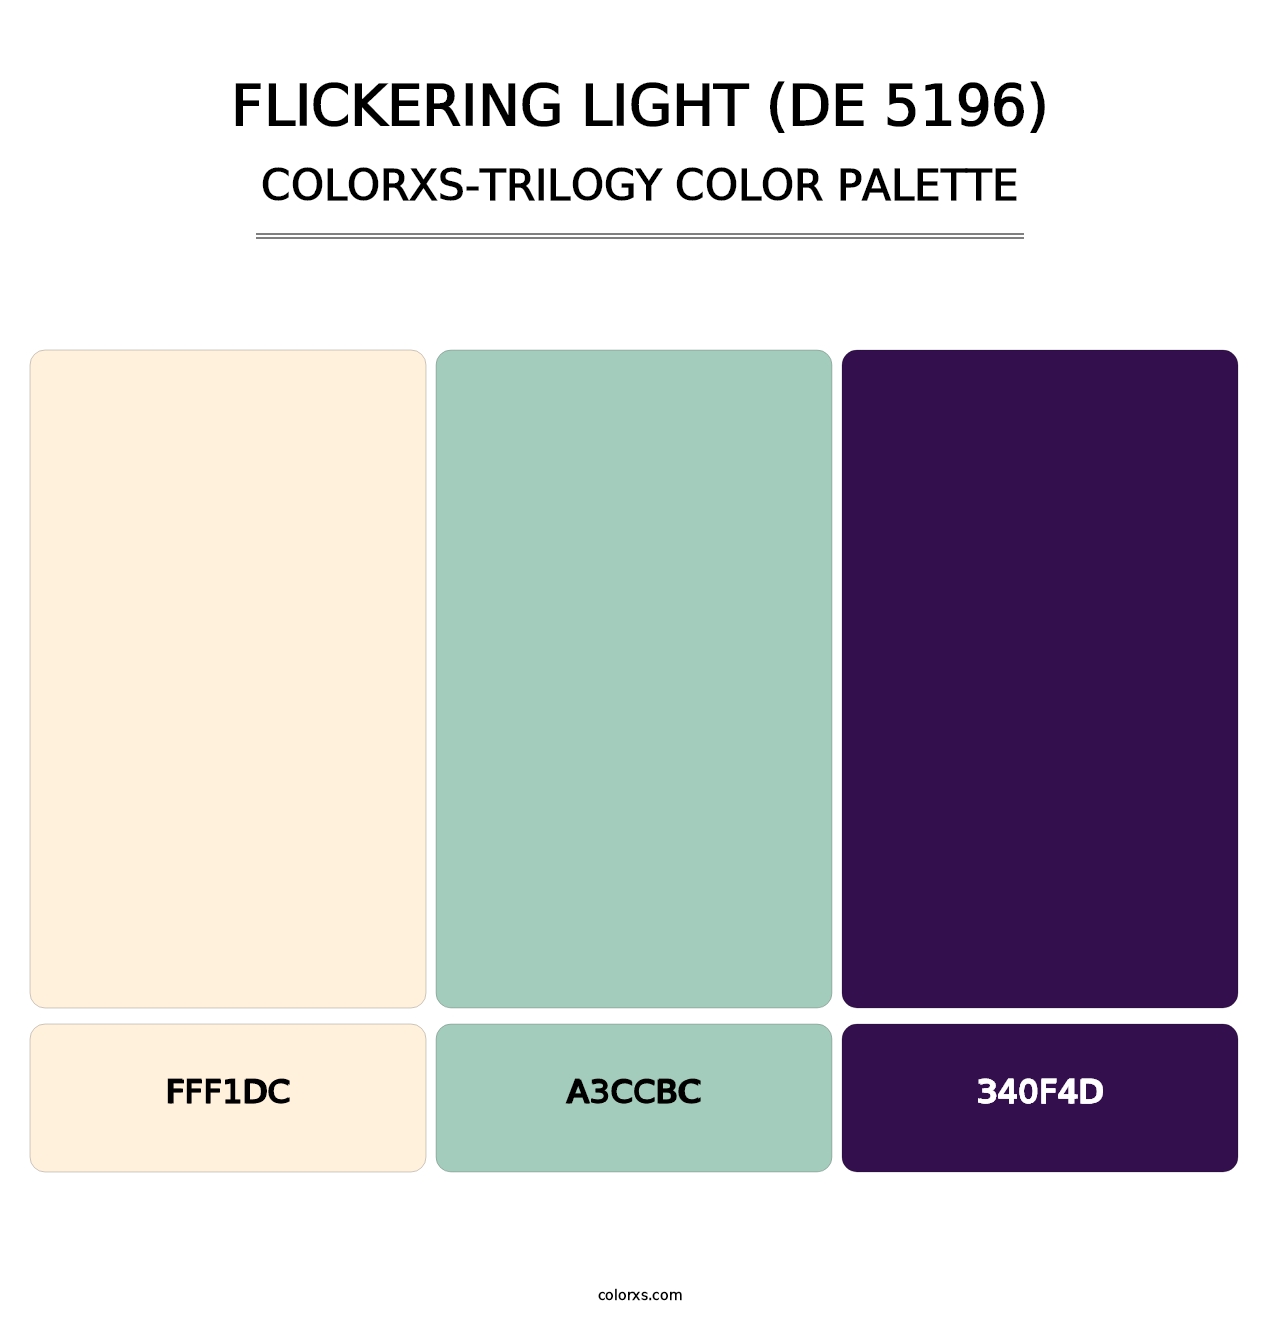 Flickering Light (DE 5196) - Colorxs Trilogy Palette